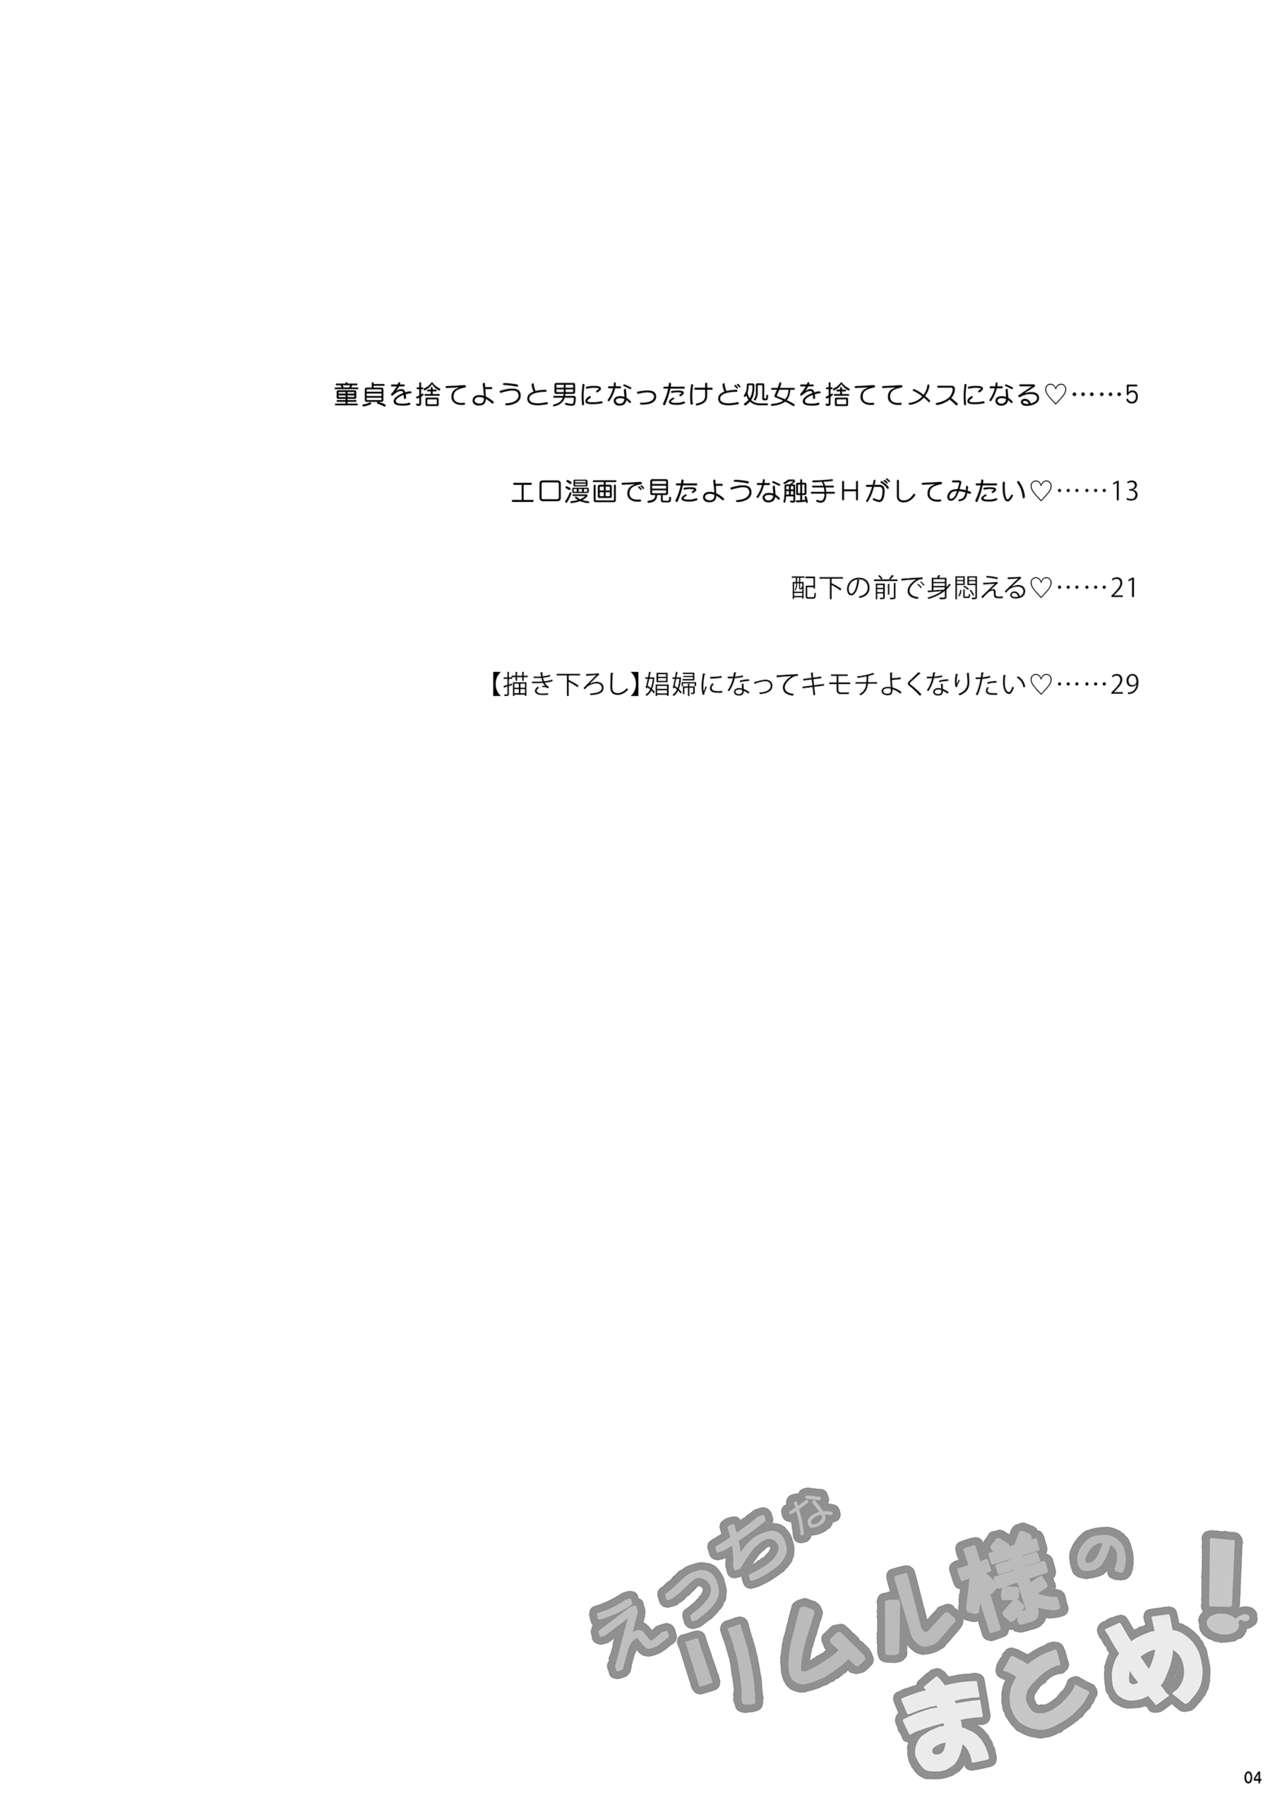 Stepbro Etchina Rimuru-sama No Matome - Tensei shitara slime datta ken Body Massage - Page 3